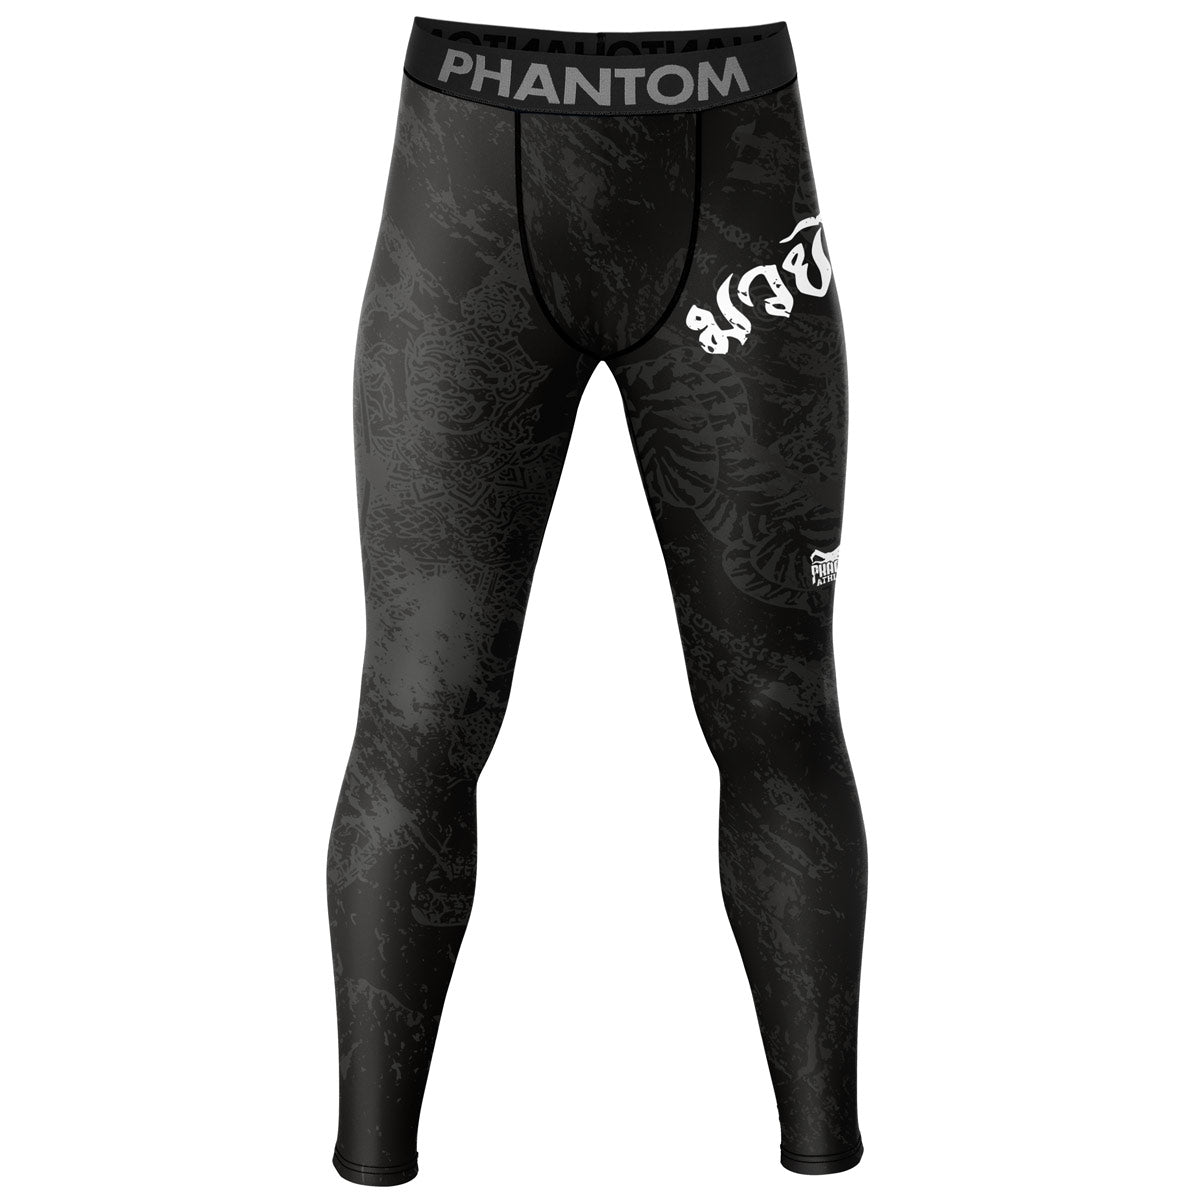 Phantom i Muay Thai design för kampsportsträning och tävling. Med thailändsk design och Sak Yant-grafik.